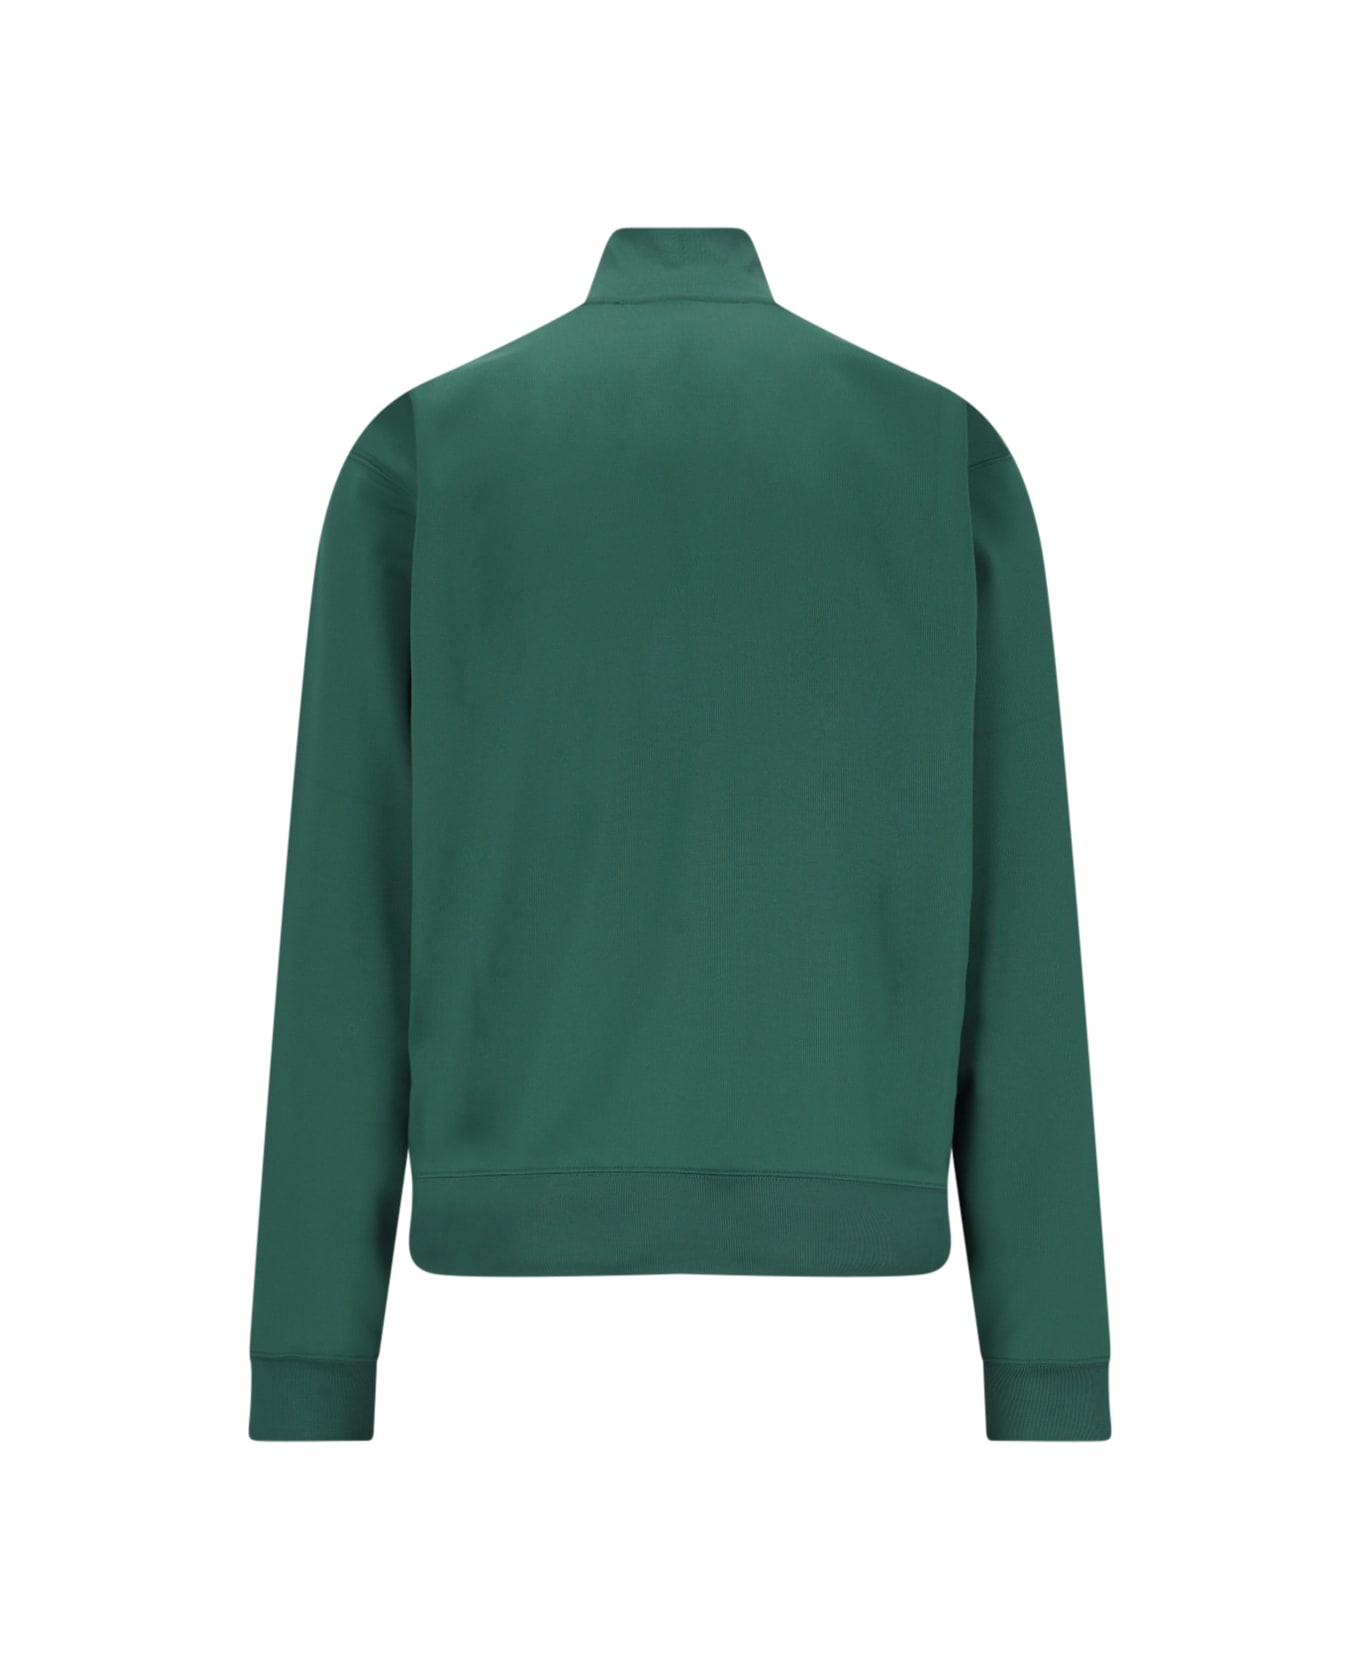 J.W. Anderson Sports Sweatshirt - Green